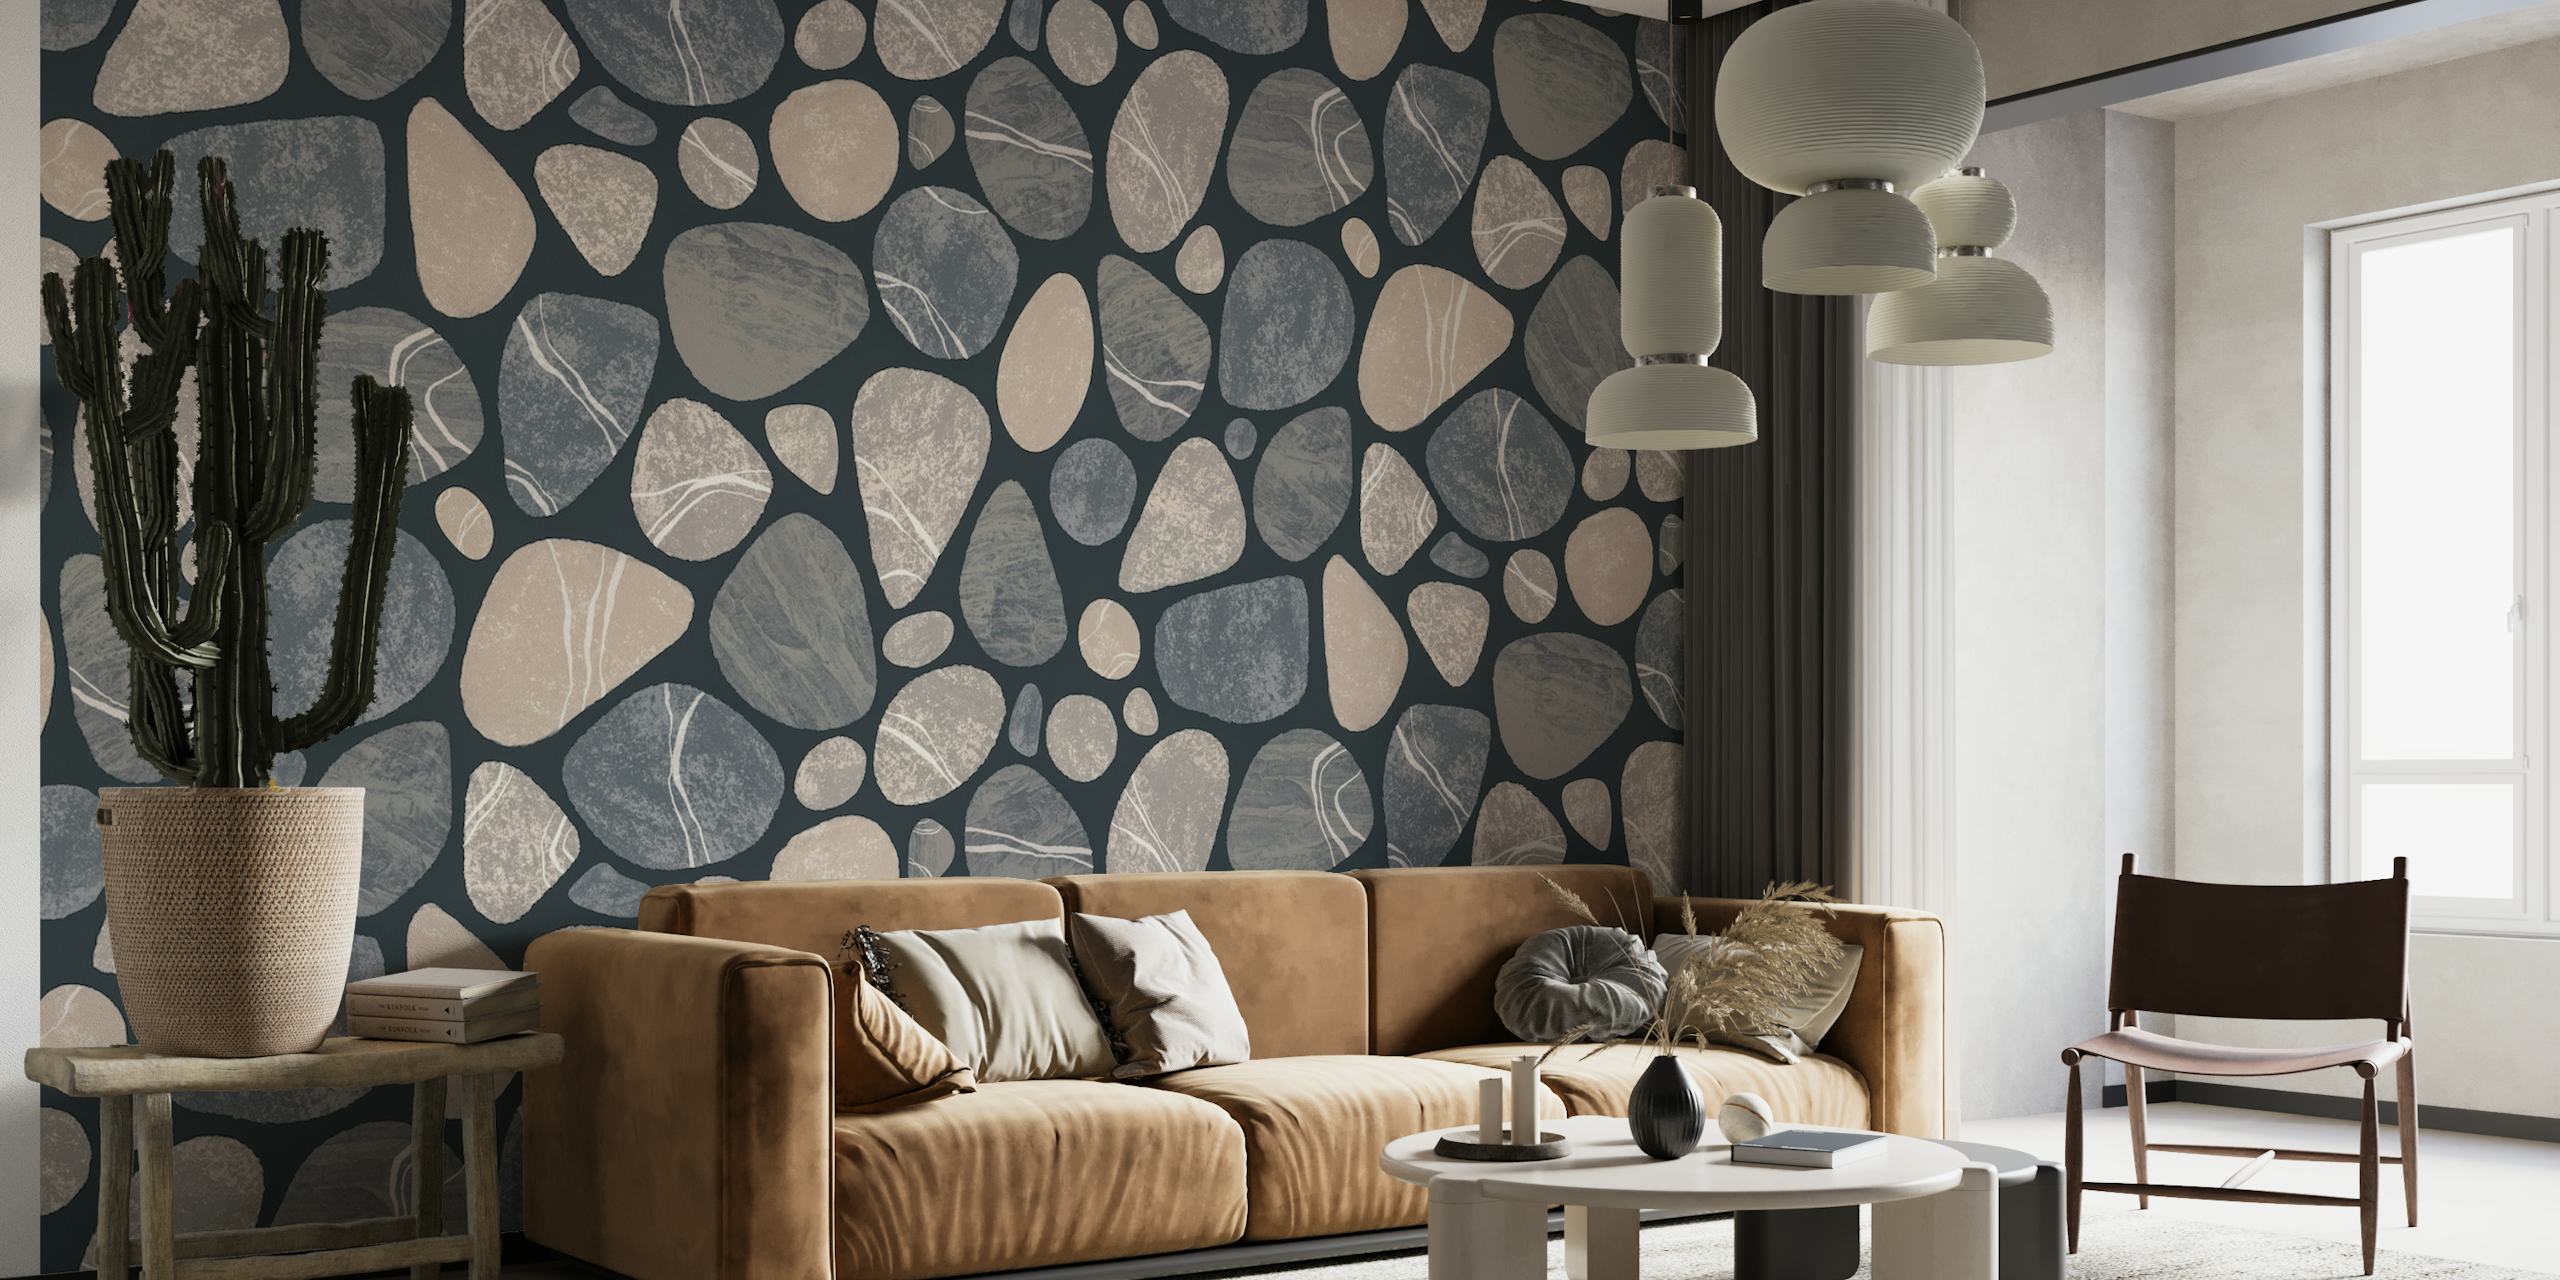 Fotomural vinílico de parede com padrão de pedra de seixo bege e cinza para uma decoração interior inspirada na natureza.